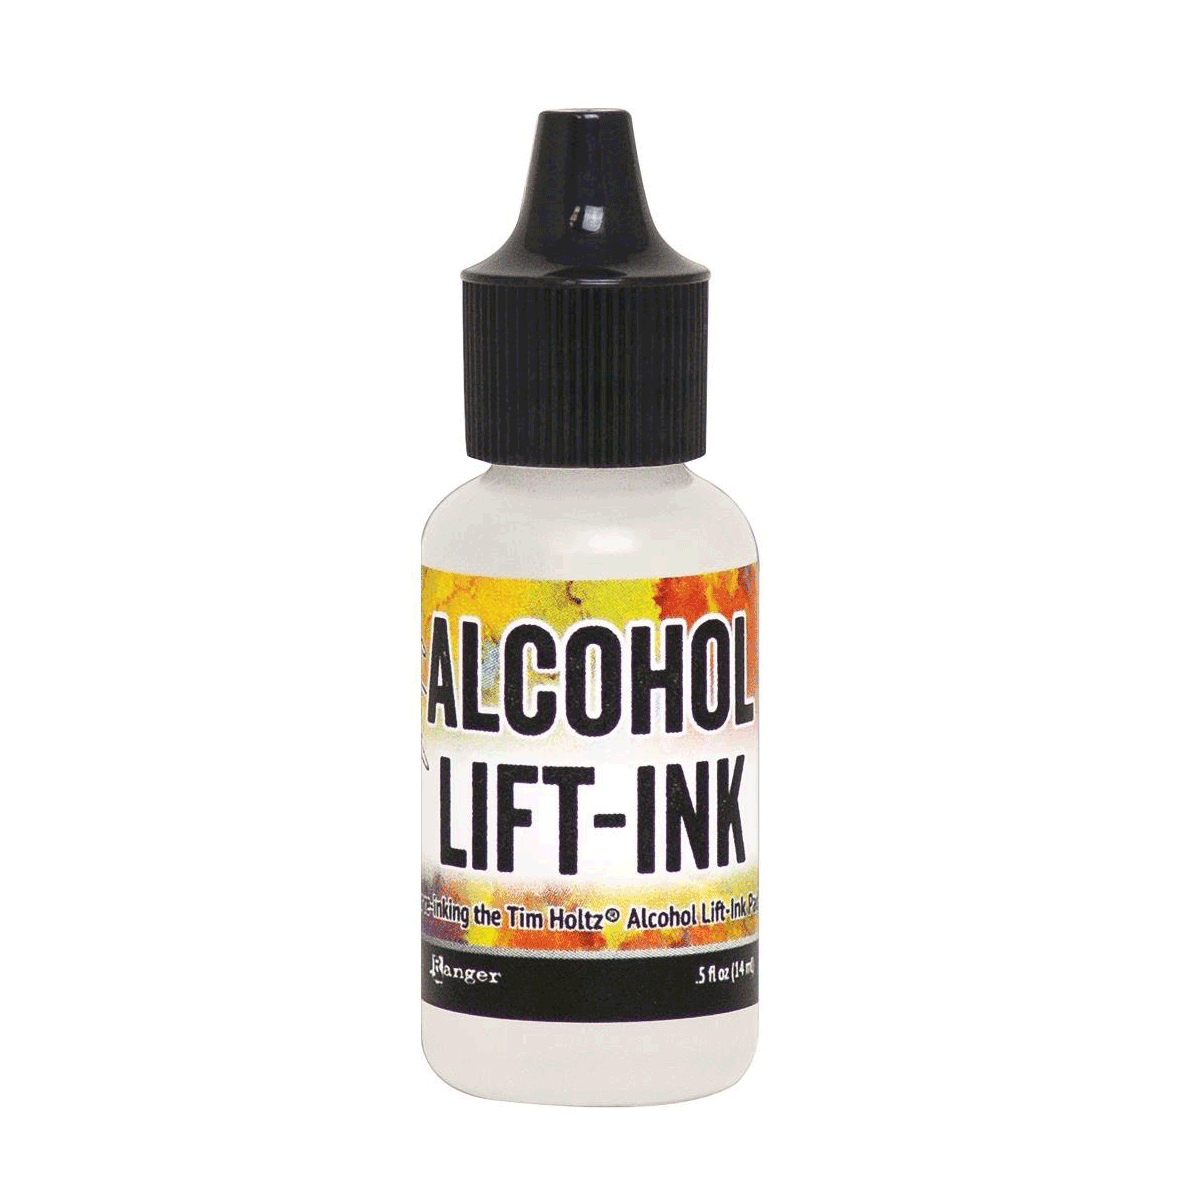 Tim Holtz Alcohol Lift-Ink Re-inker, .5oz